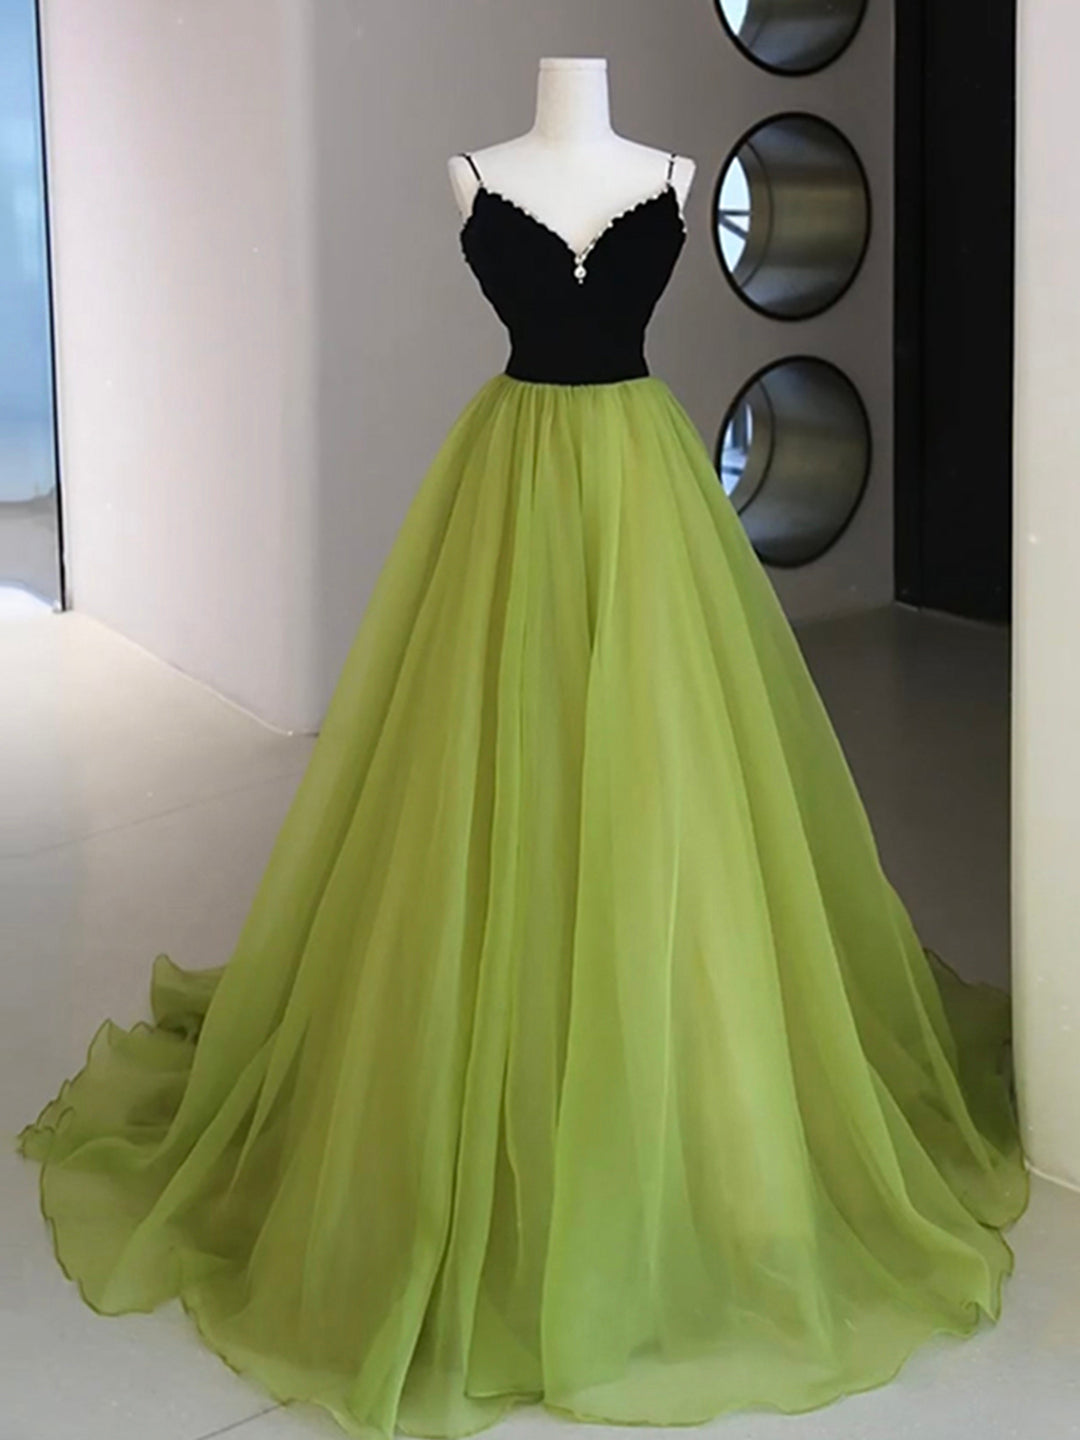 Bridesmaids Dress Gold, Black Velvet and Green Tulle Long Prom Dress, Green V-Neck Evening Dress